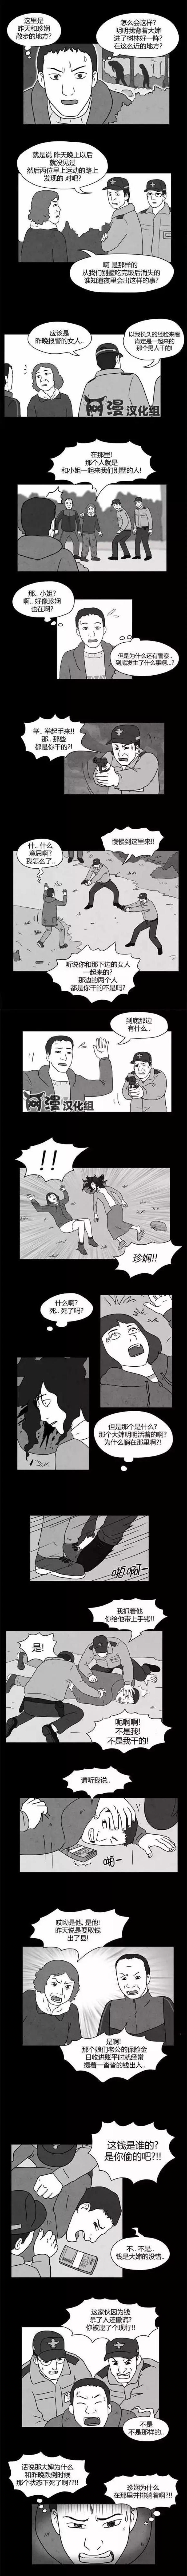 韩国漫画《急救电话》，贪婪是让人堕入地狱的魔鬼-黑白漫话